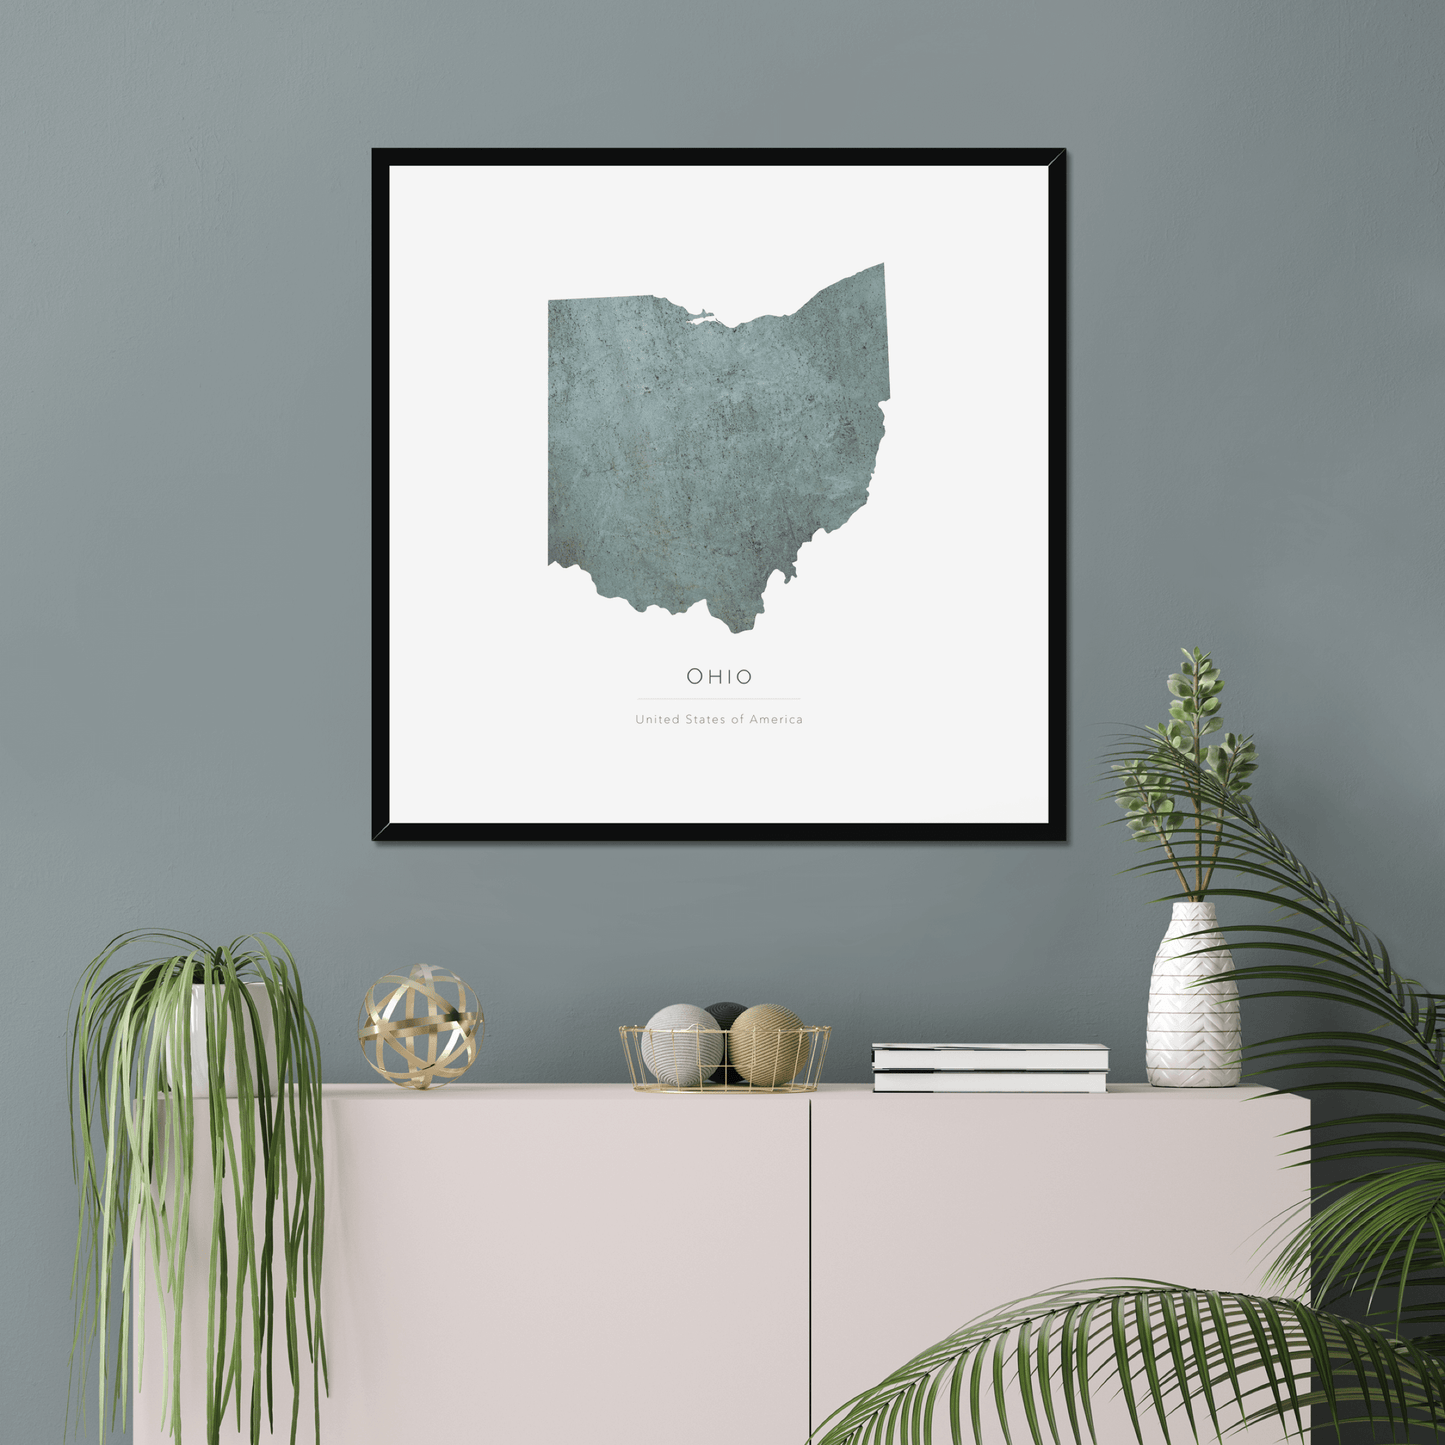 Ohio -  Framed & Mounted Map